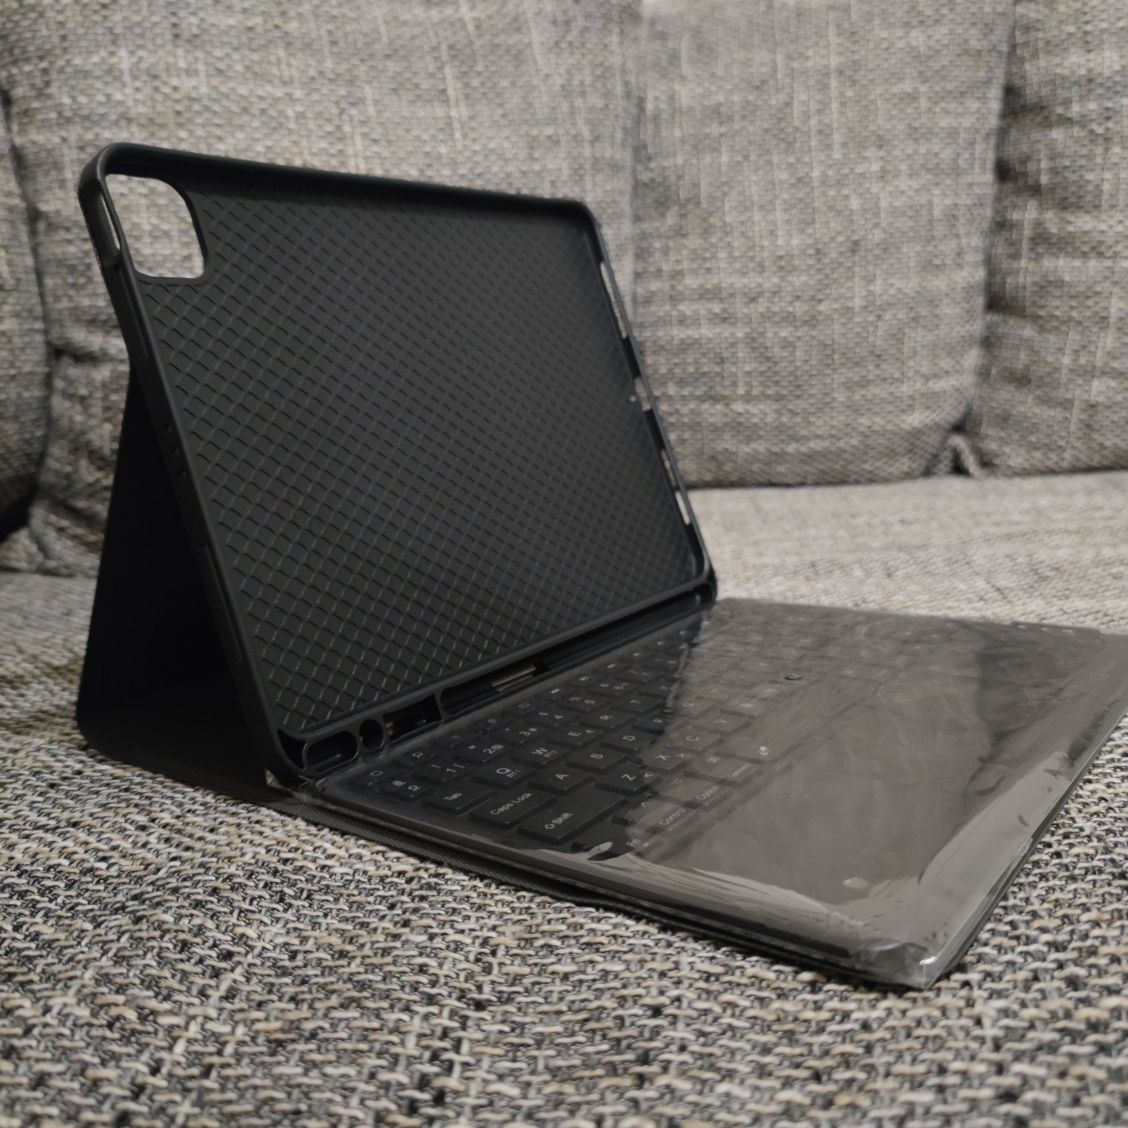 Tastatura si carcasa pentru Ipad air 5a generatie

Tasratura bluetoot